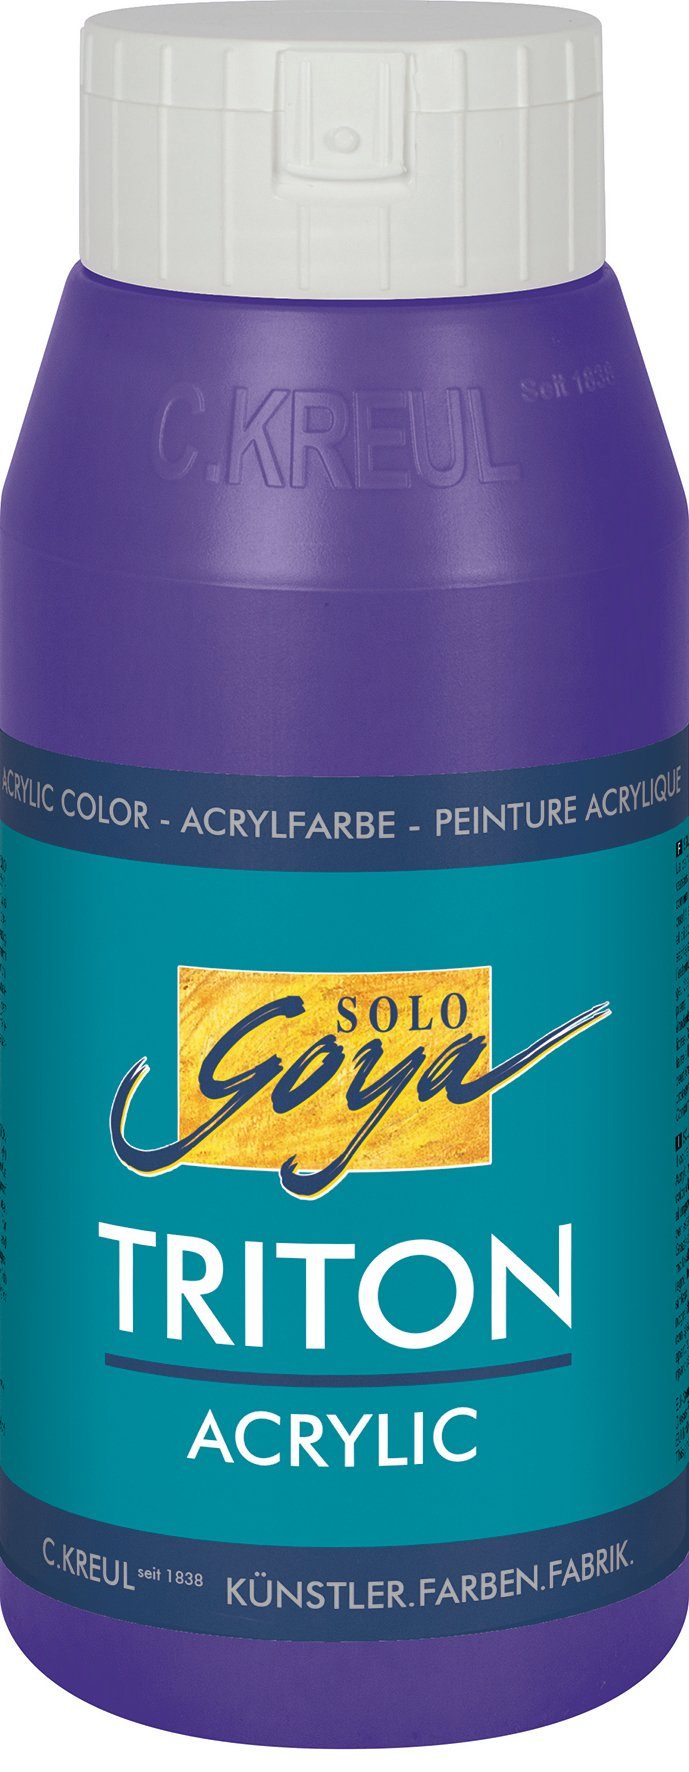 Acrylic, 750 Violett Triton Solo Acrylfarbe ml Goya Kreul